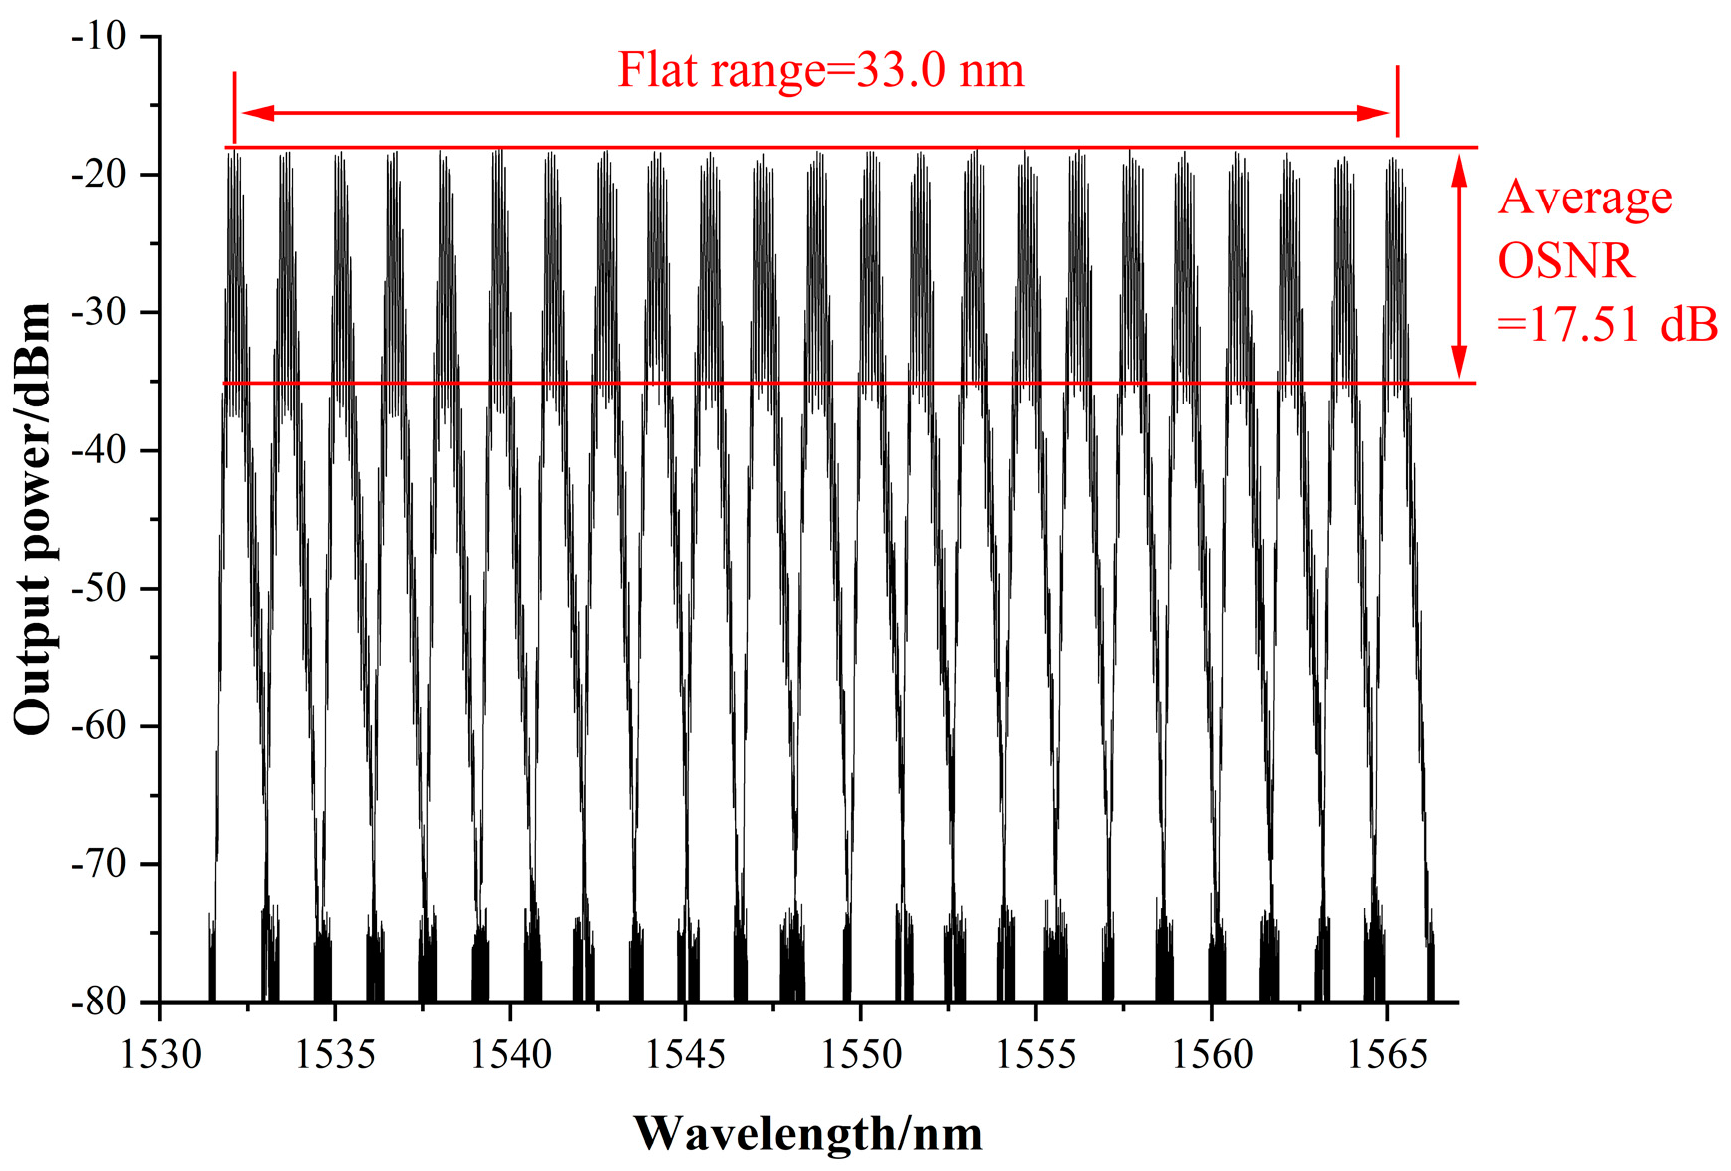 11-Schéma du laser fibré dopédopé`dopéà l'Erbium.